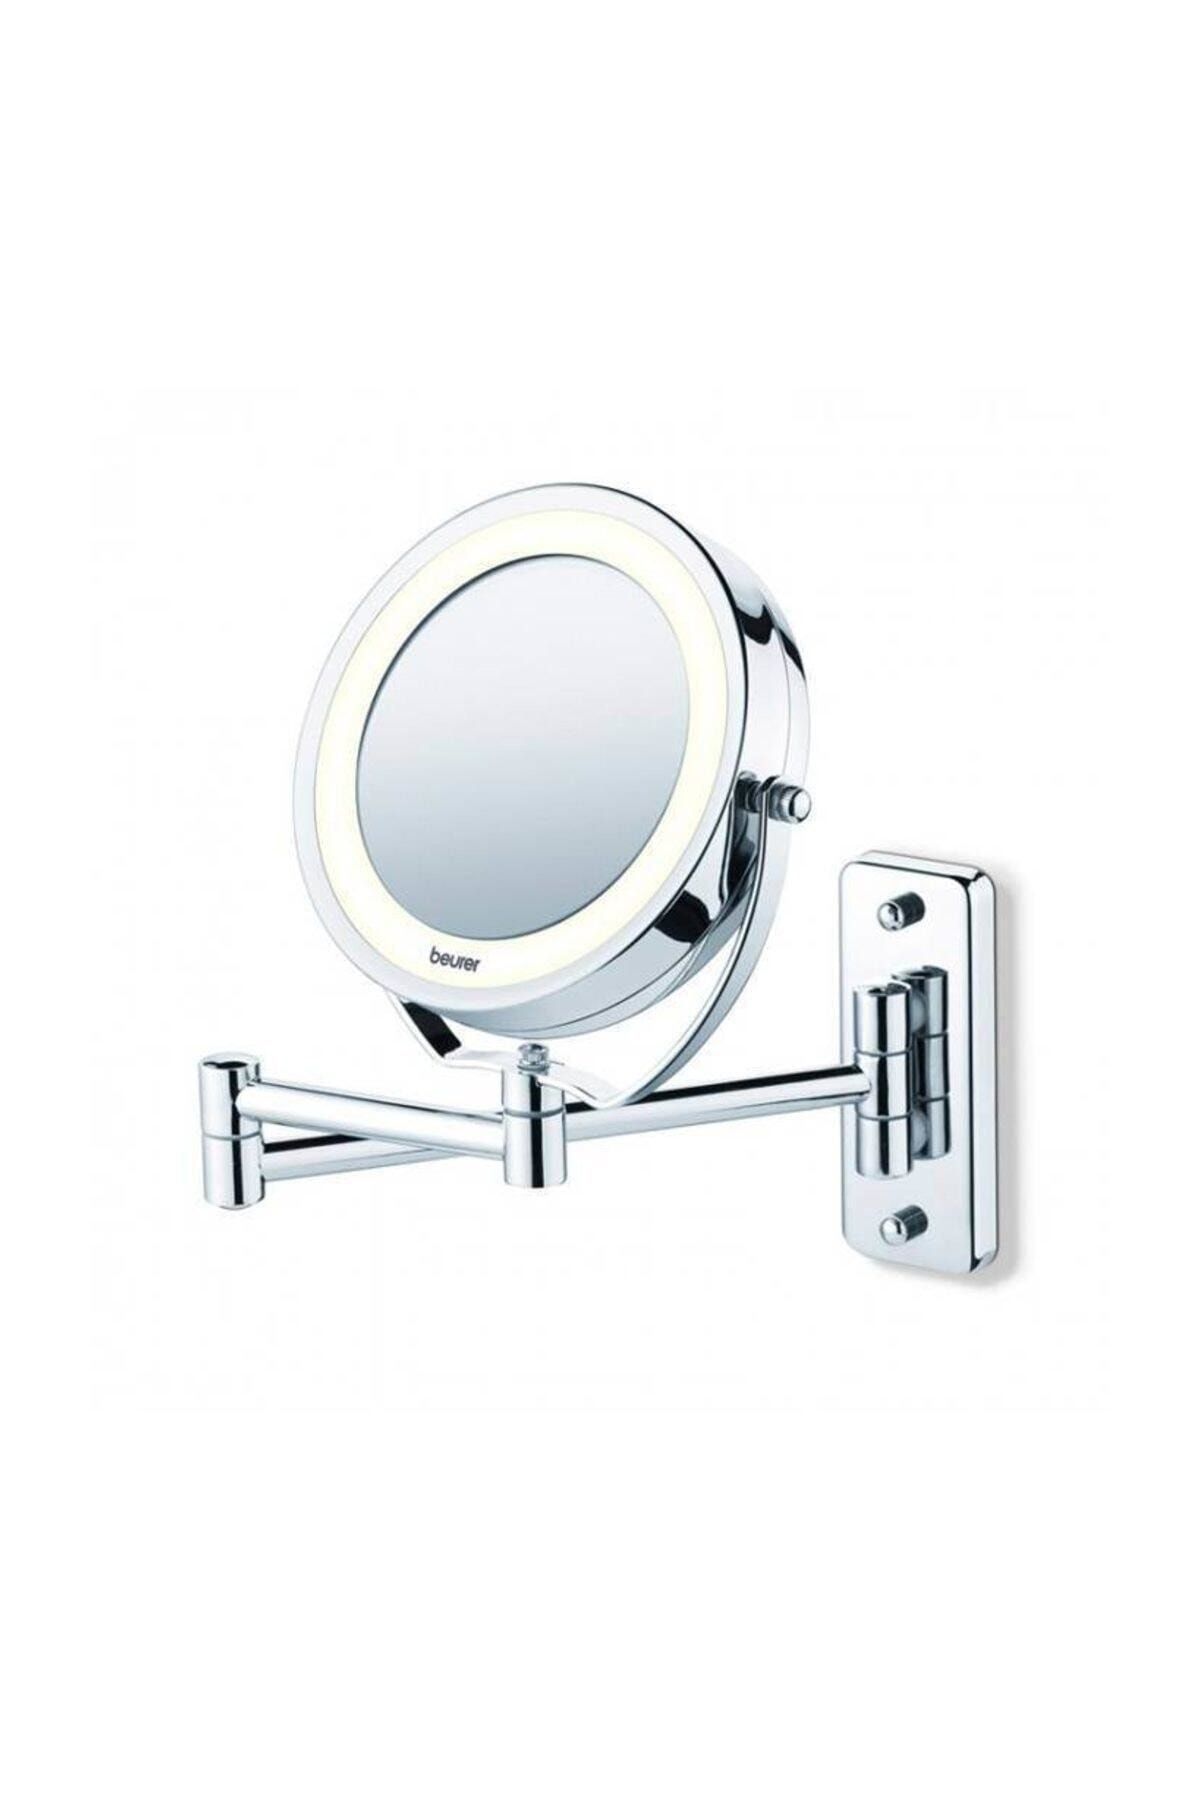 Beurer Bs 59 Işıklı Makyaj Aynası